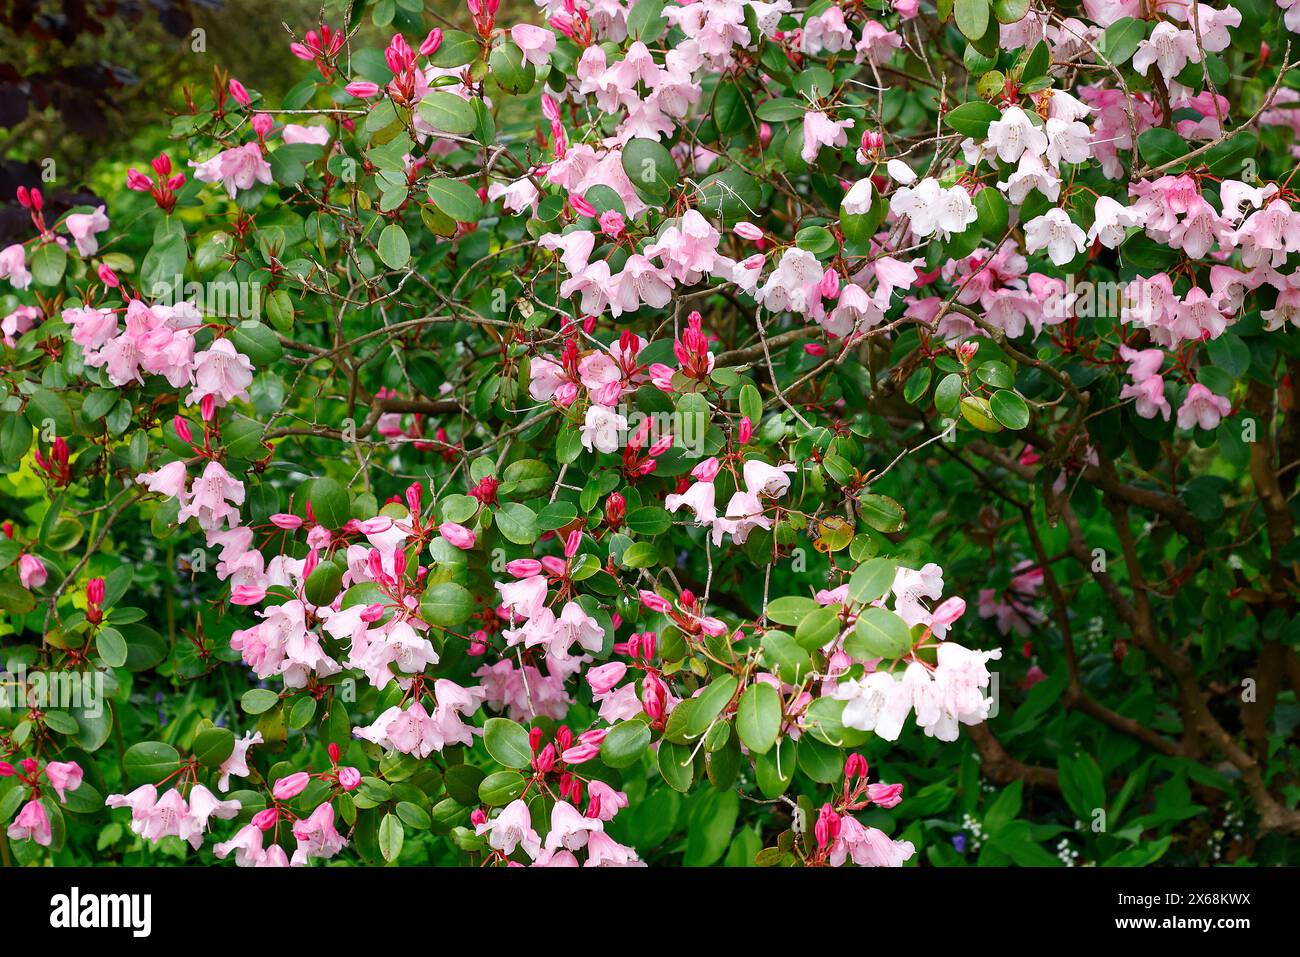 Gros plan sur les bourgeons de fleurs rouges et les fleurs ouvertes blanches roses de la plante de jardin pérenne à feuilles persistantes Rhododendron brocart. Banque D'Images